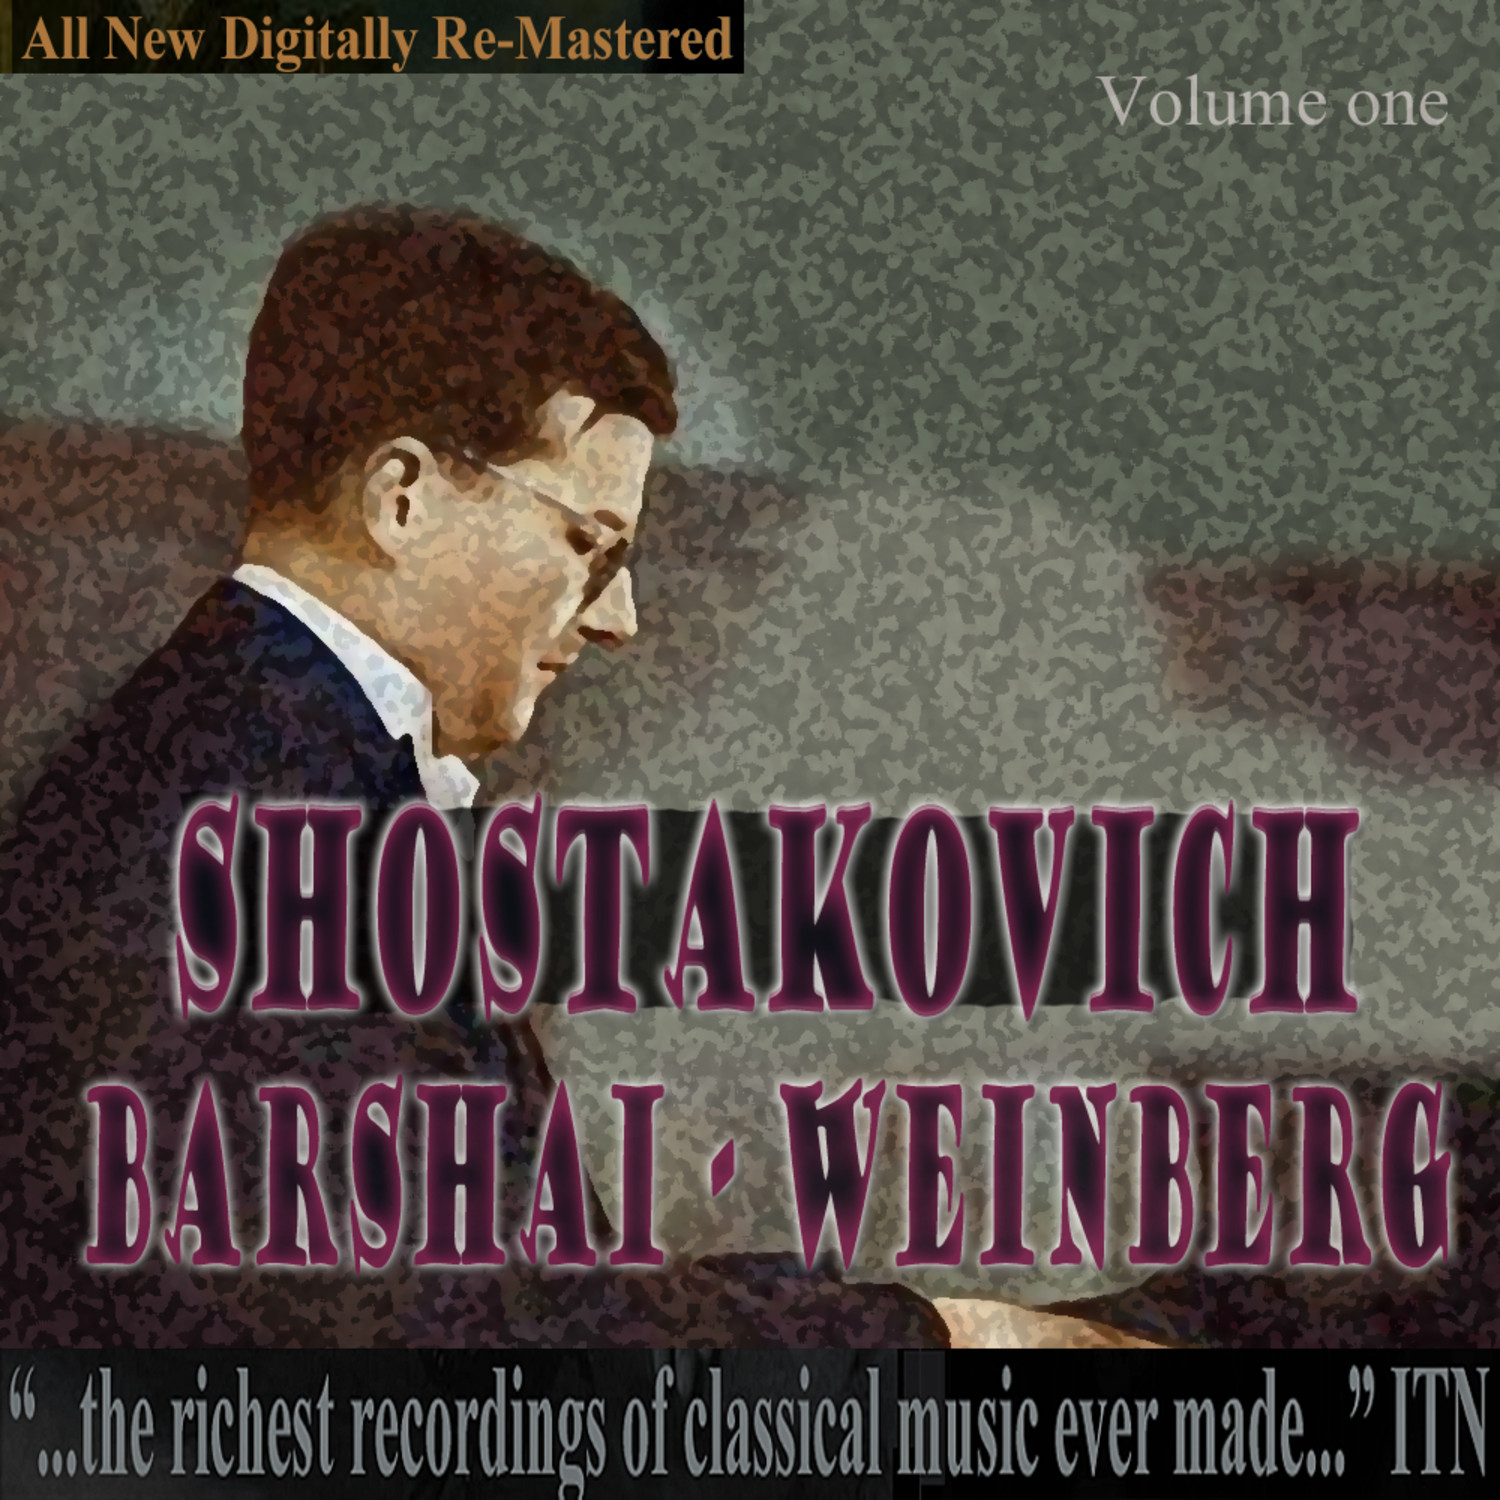 Barshai - Shostakovich, Weinberg